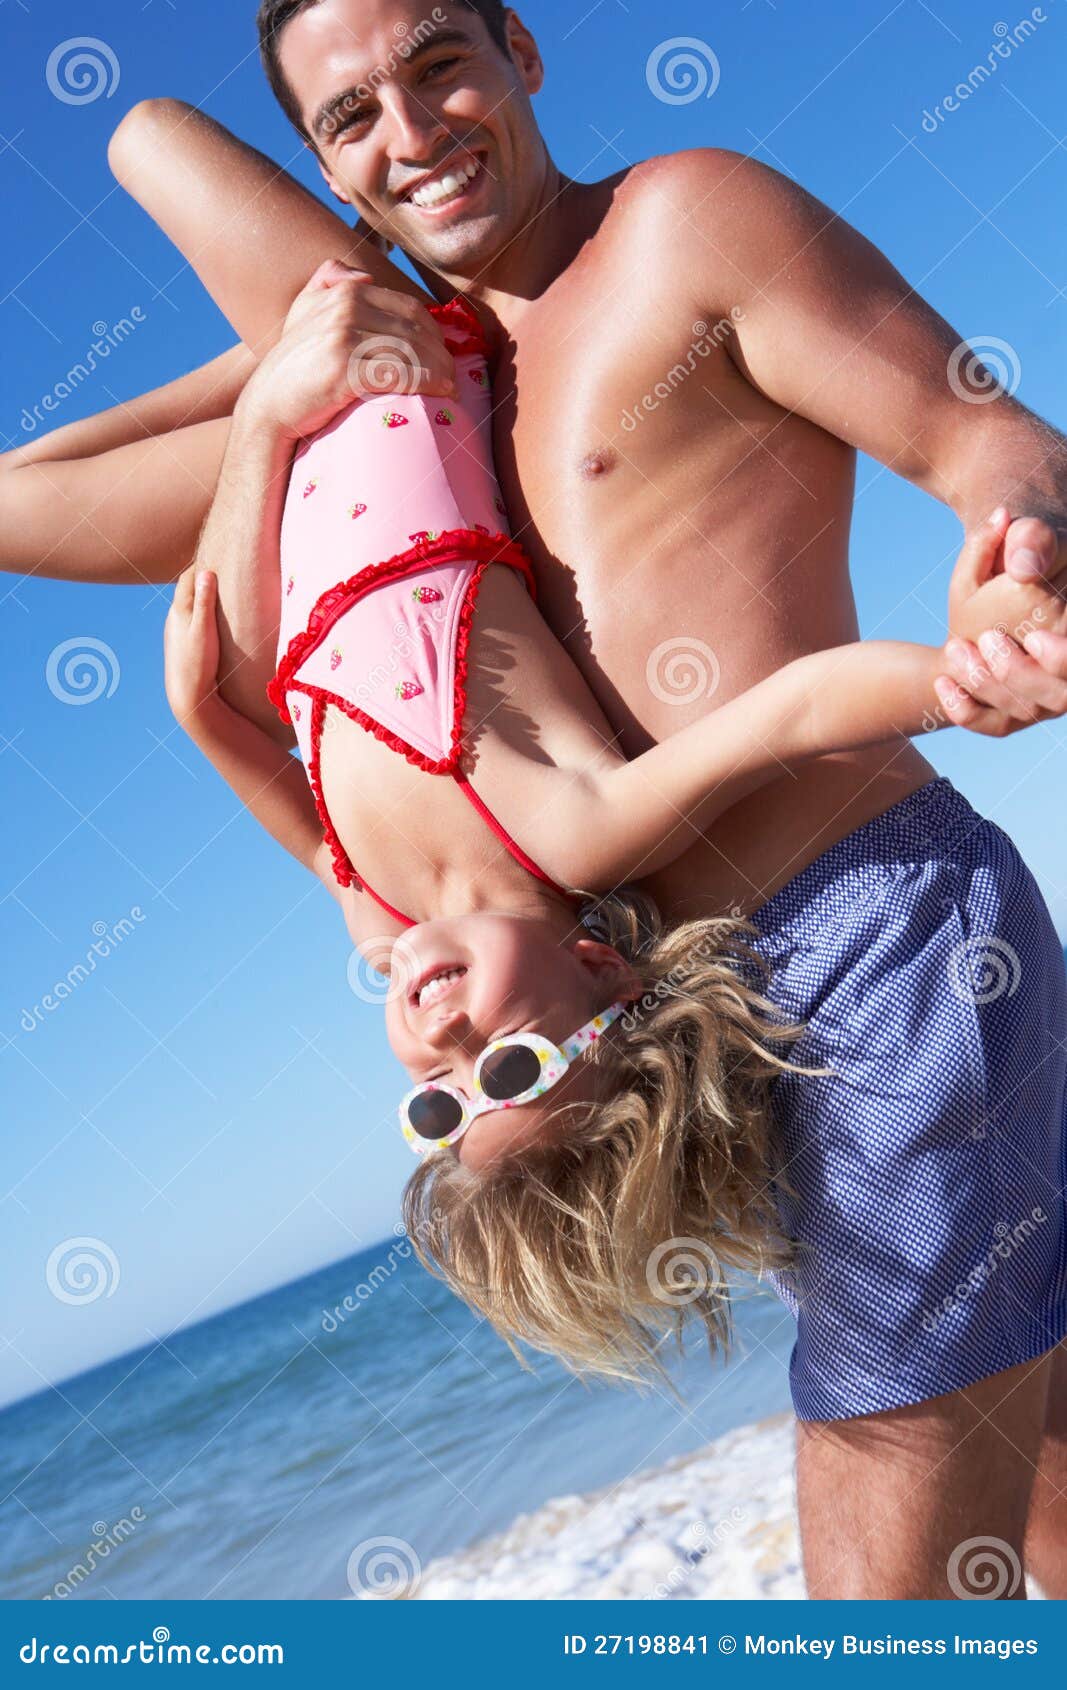 Дочка папа на пляже. Папа с дочерью на пляже фотосессия. Пара с рдочкой на пляже. Подросток и папа на пляже. Девушка с отцом на пляже.